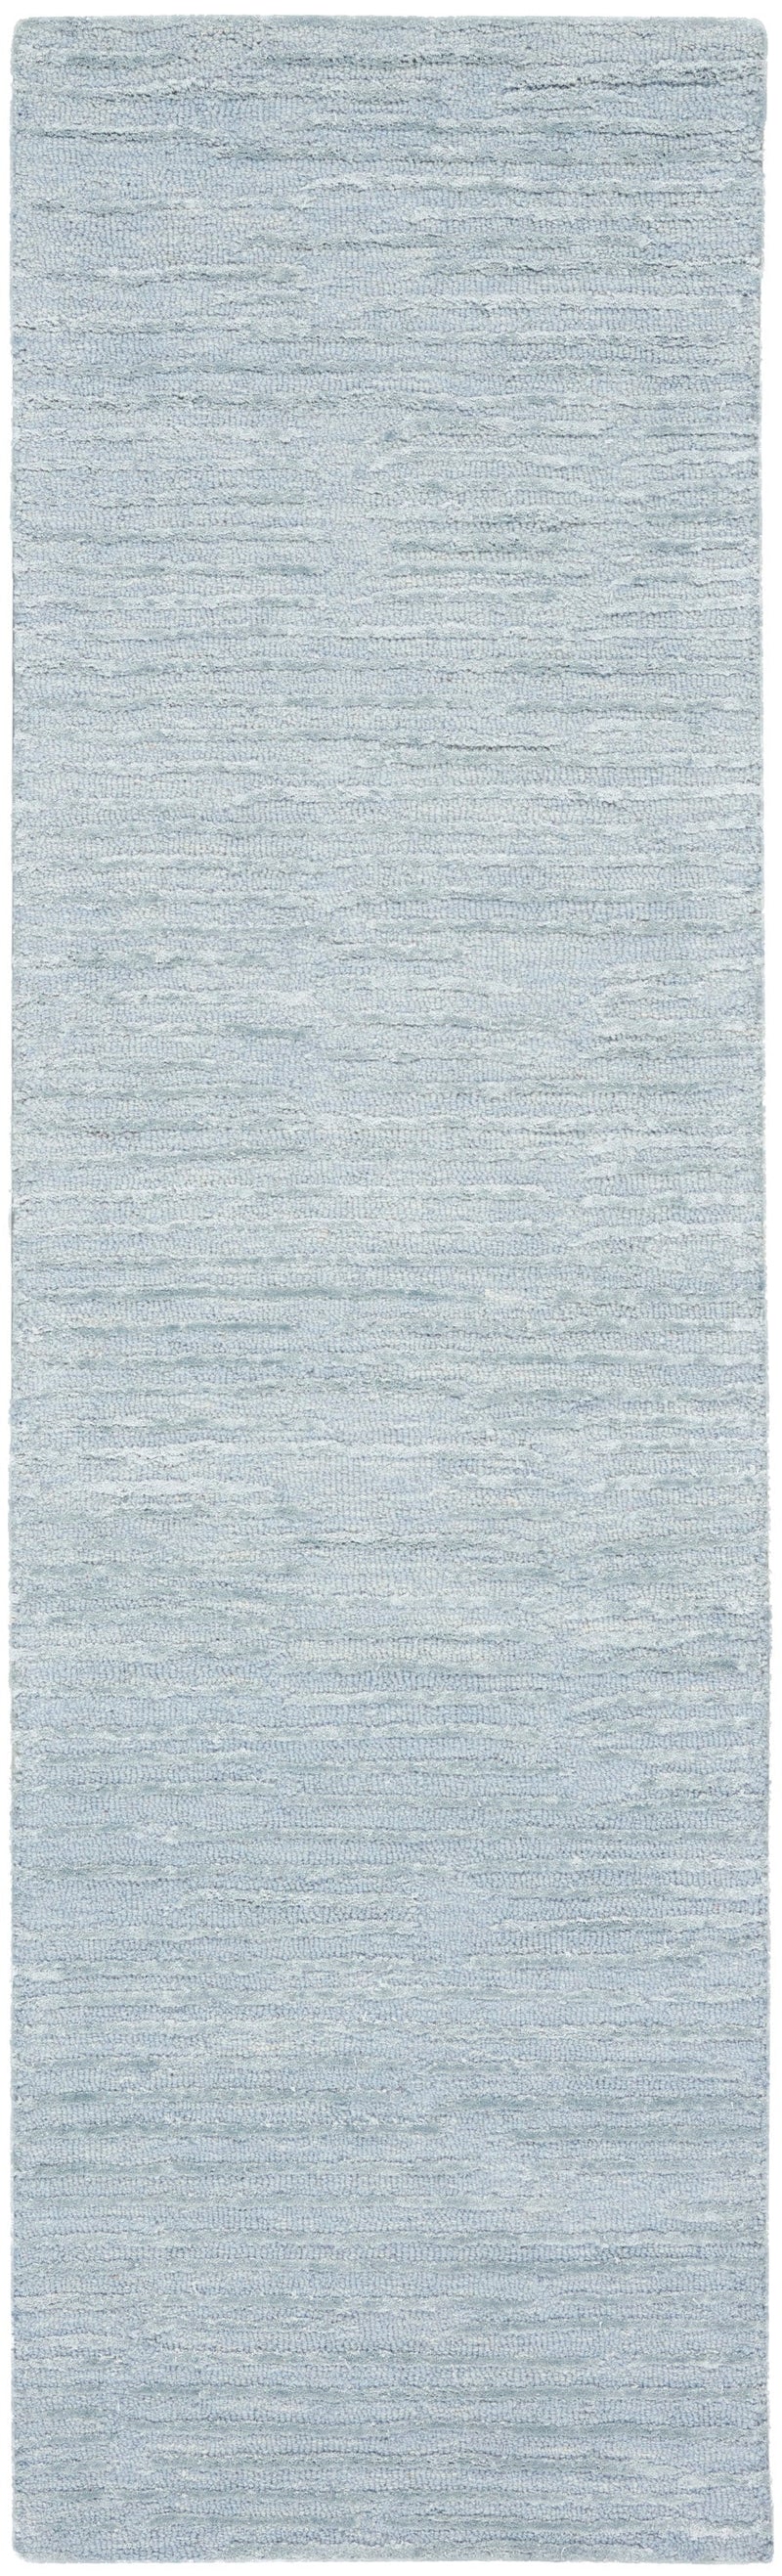 media image for ck010 linear handmade light blue rug by nourison 99446879950 redo 2 248